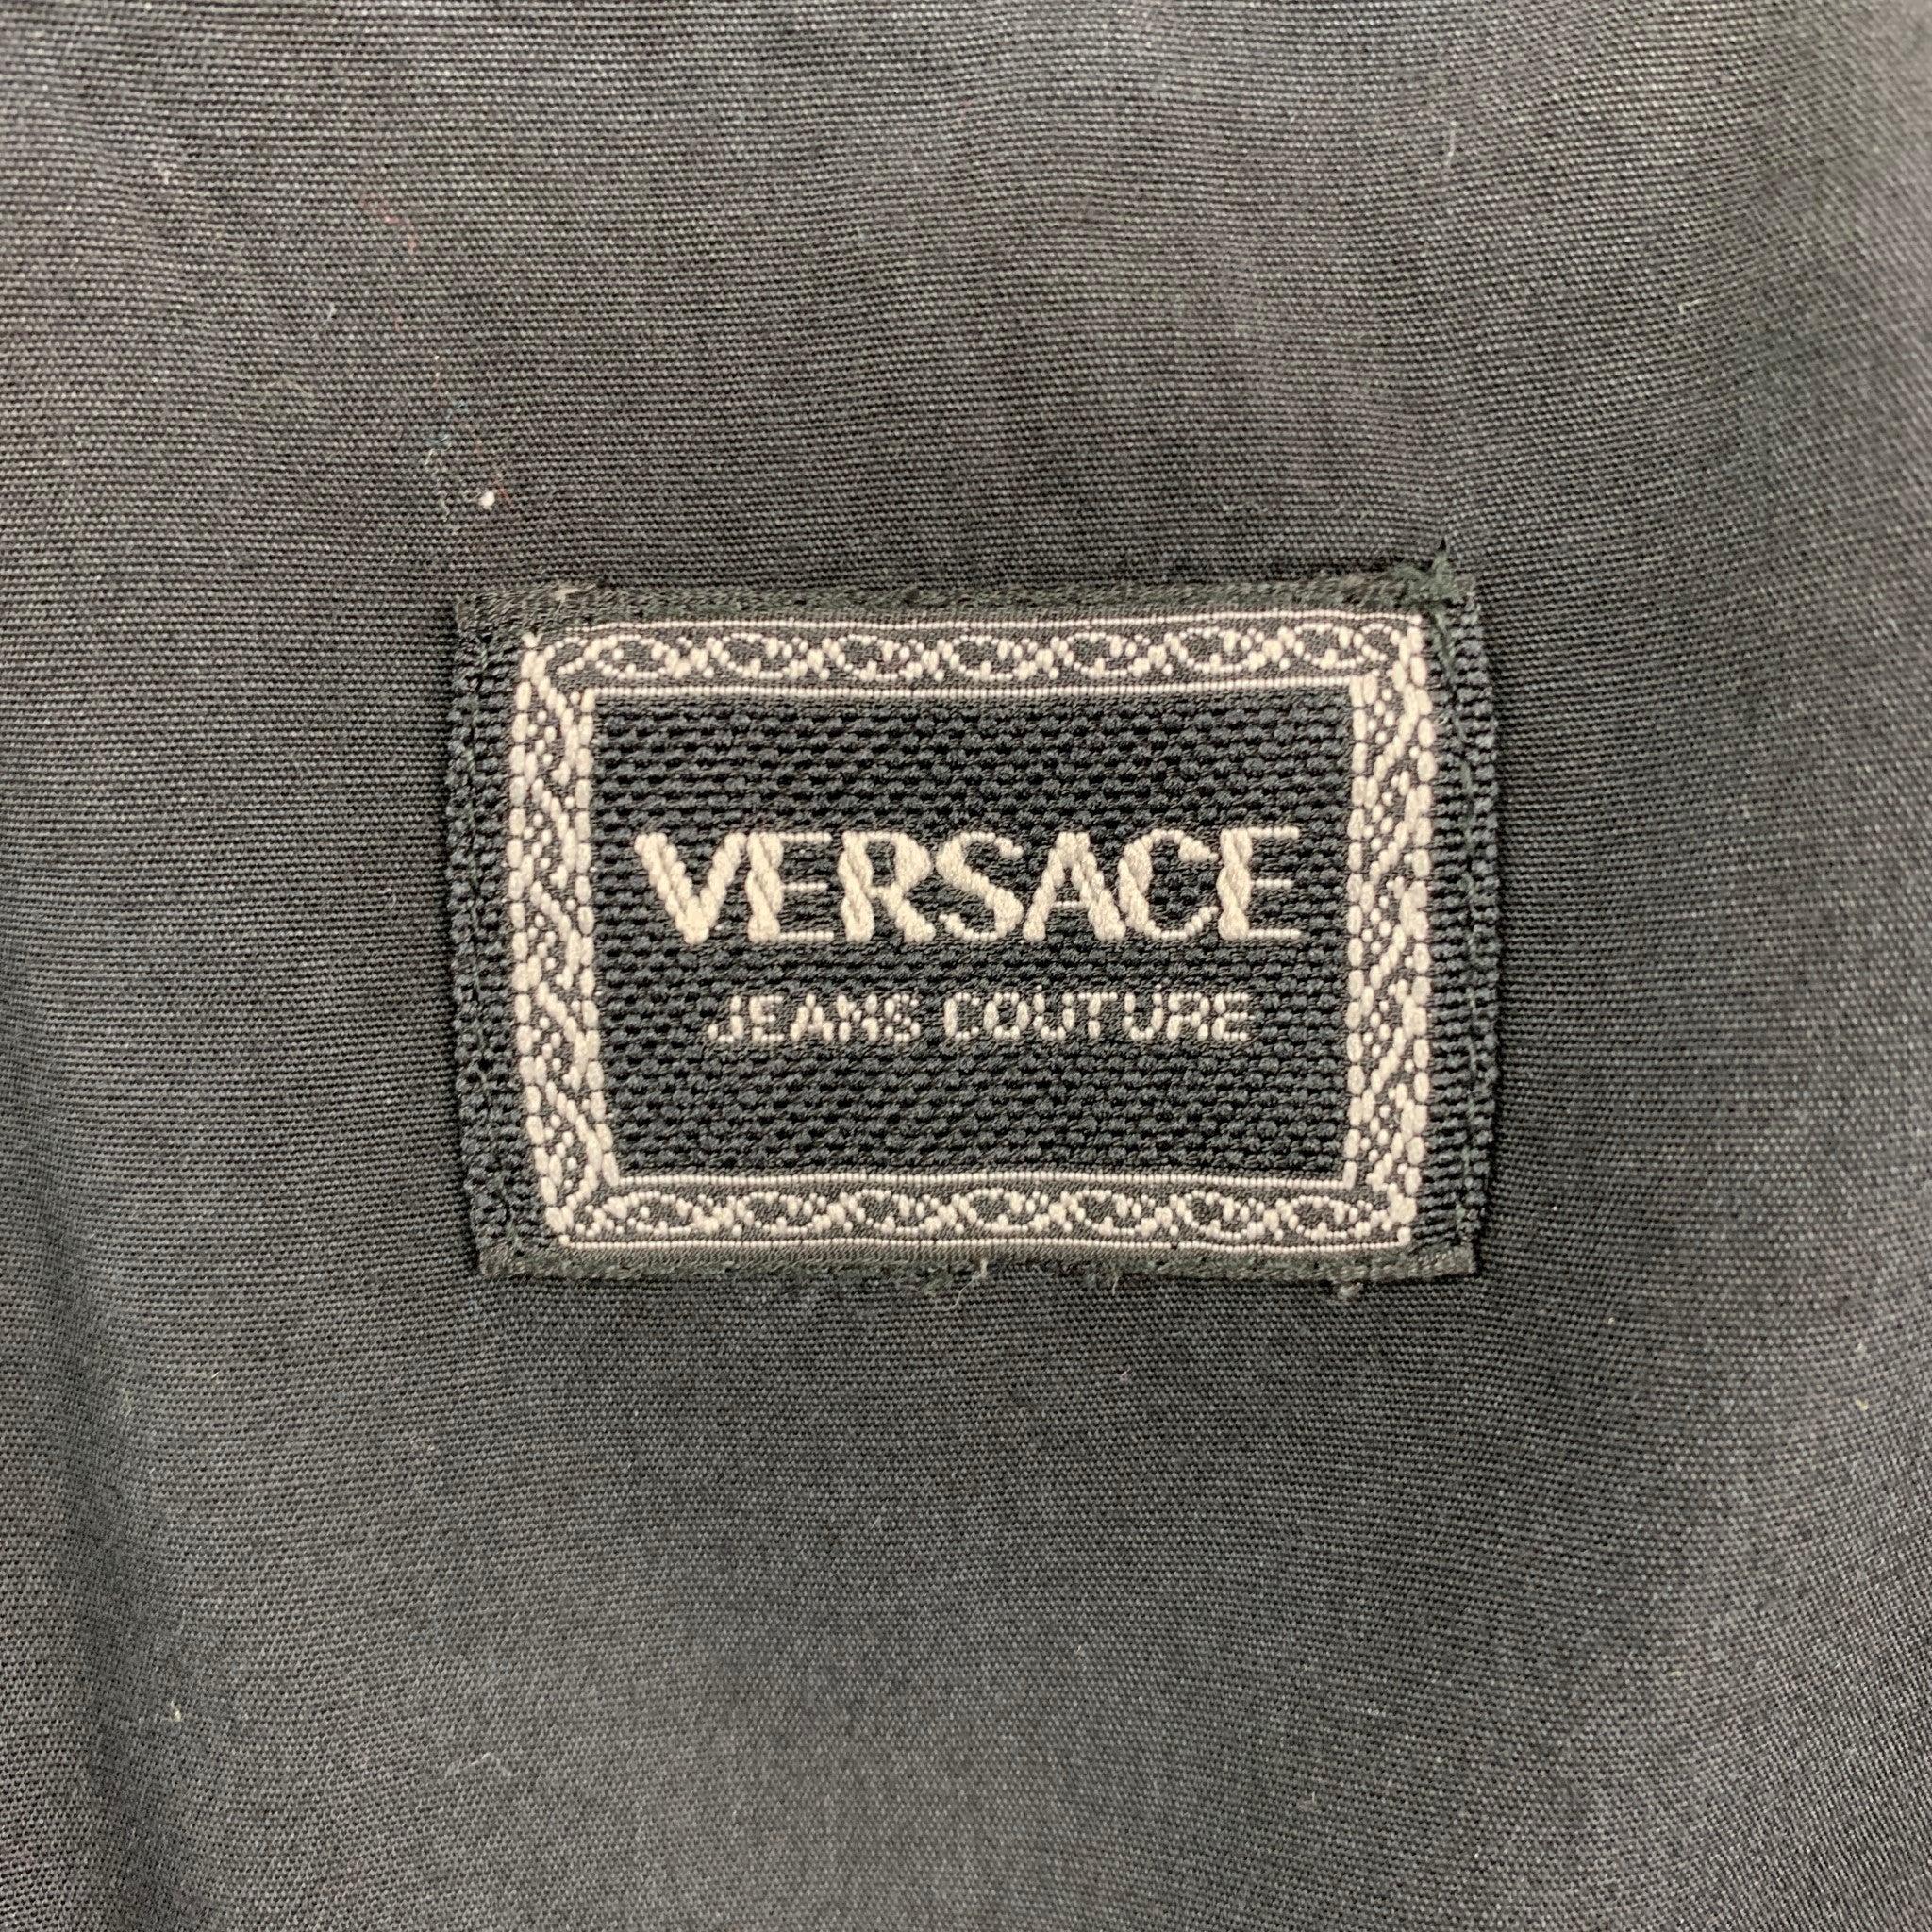 Vintage VERSACE JEANS COUTURE Size M Black Cotton Button Down Long Sleeve Shirt For Sale 2